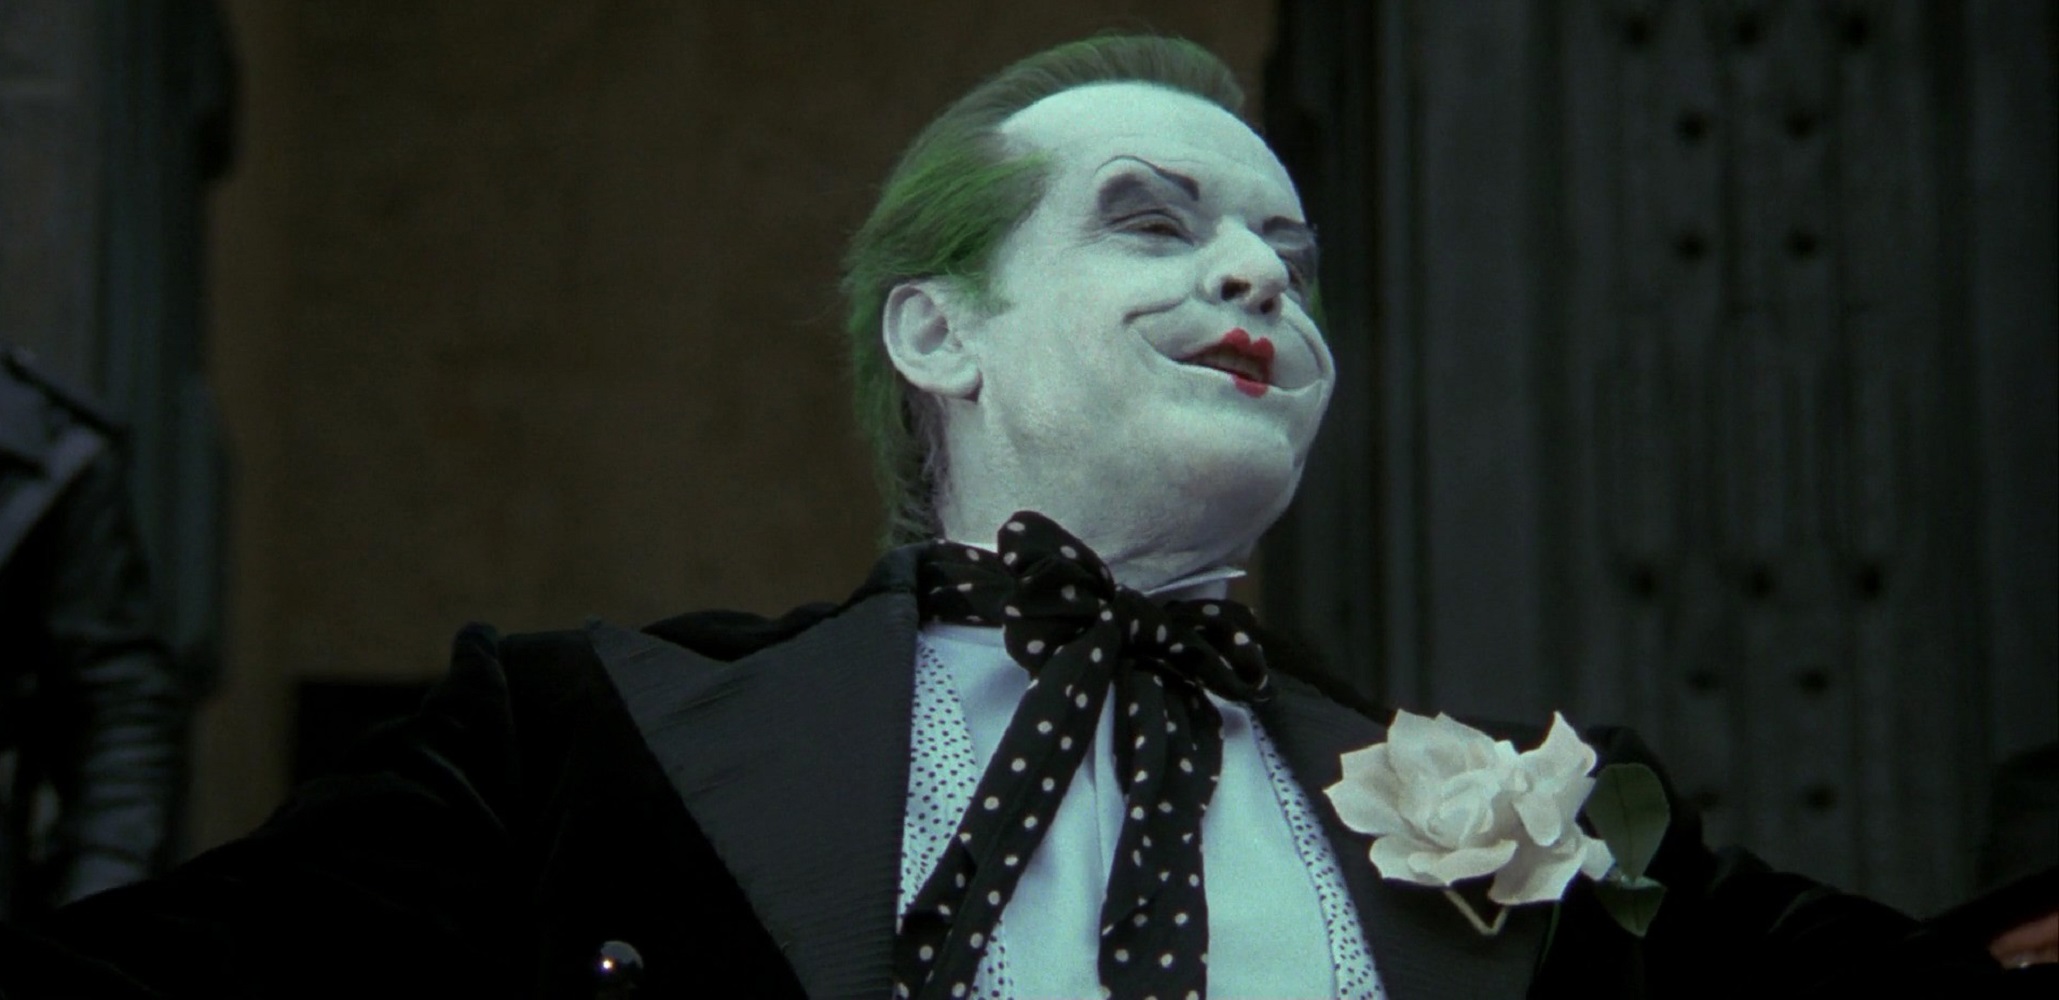 Joker costume variant